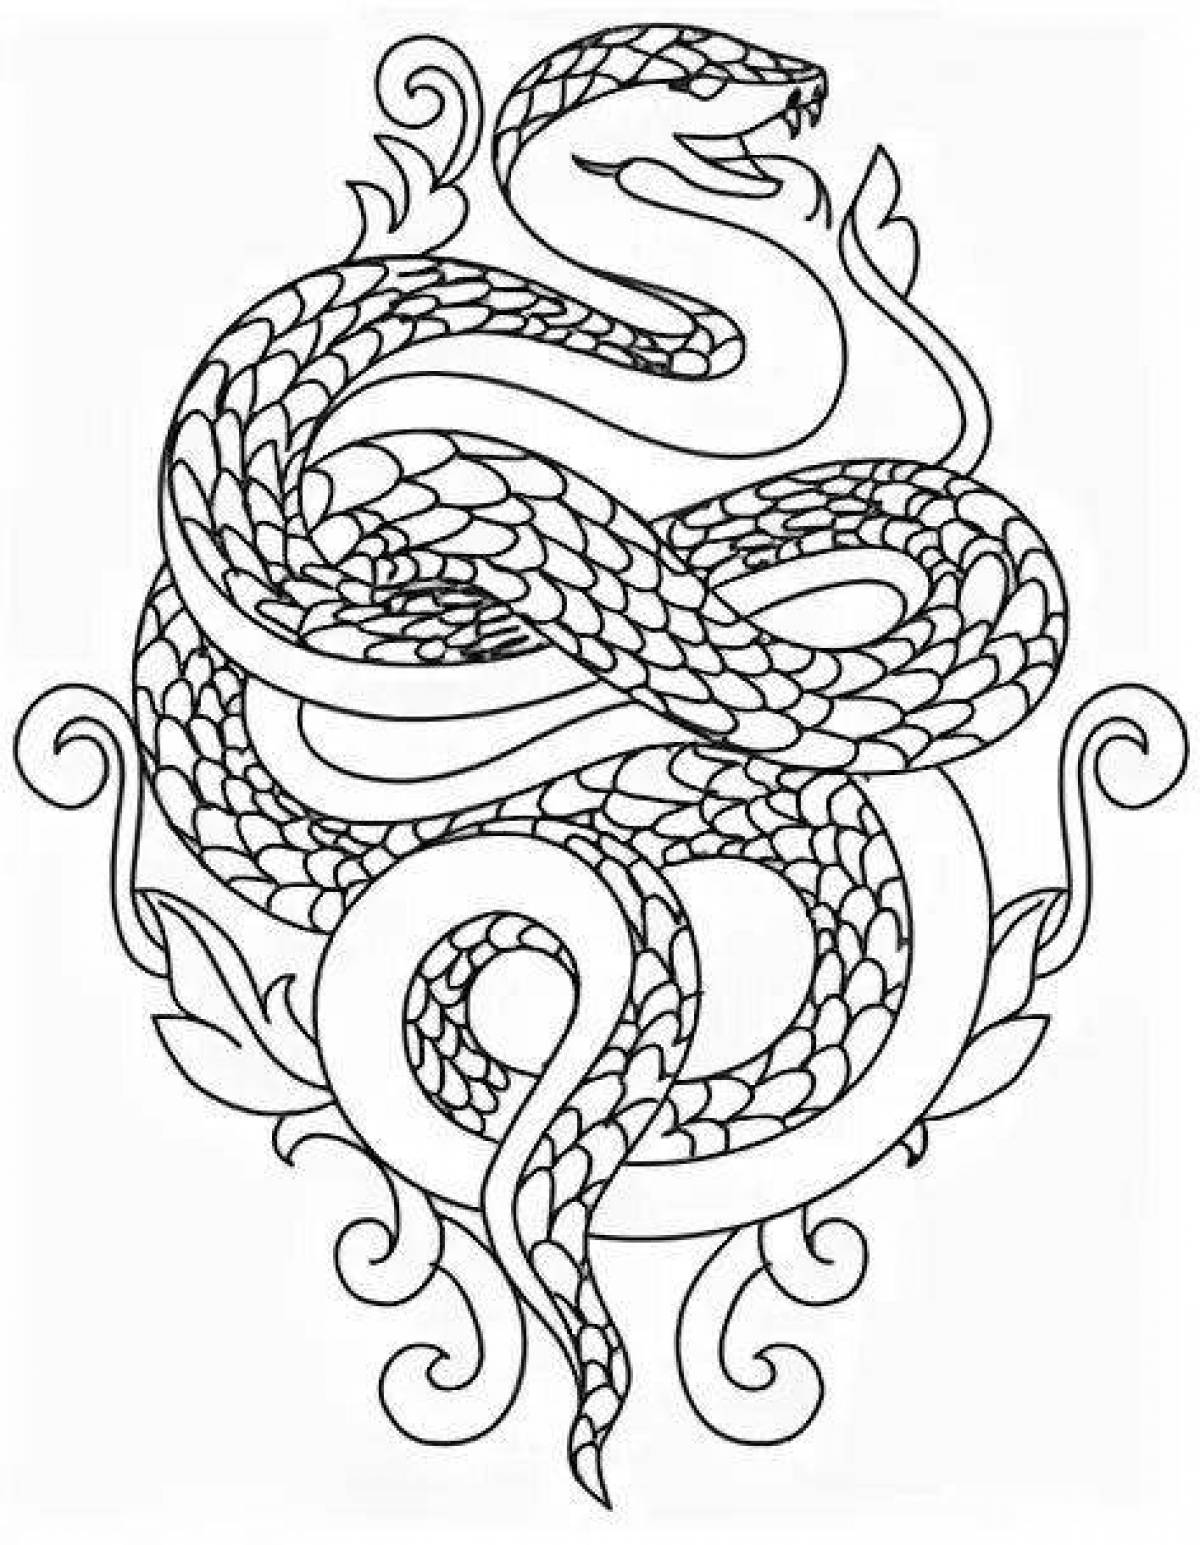 Magic coloring snake antistress